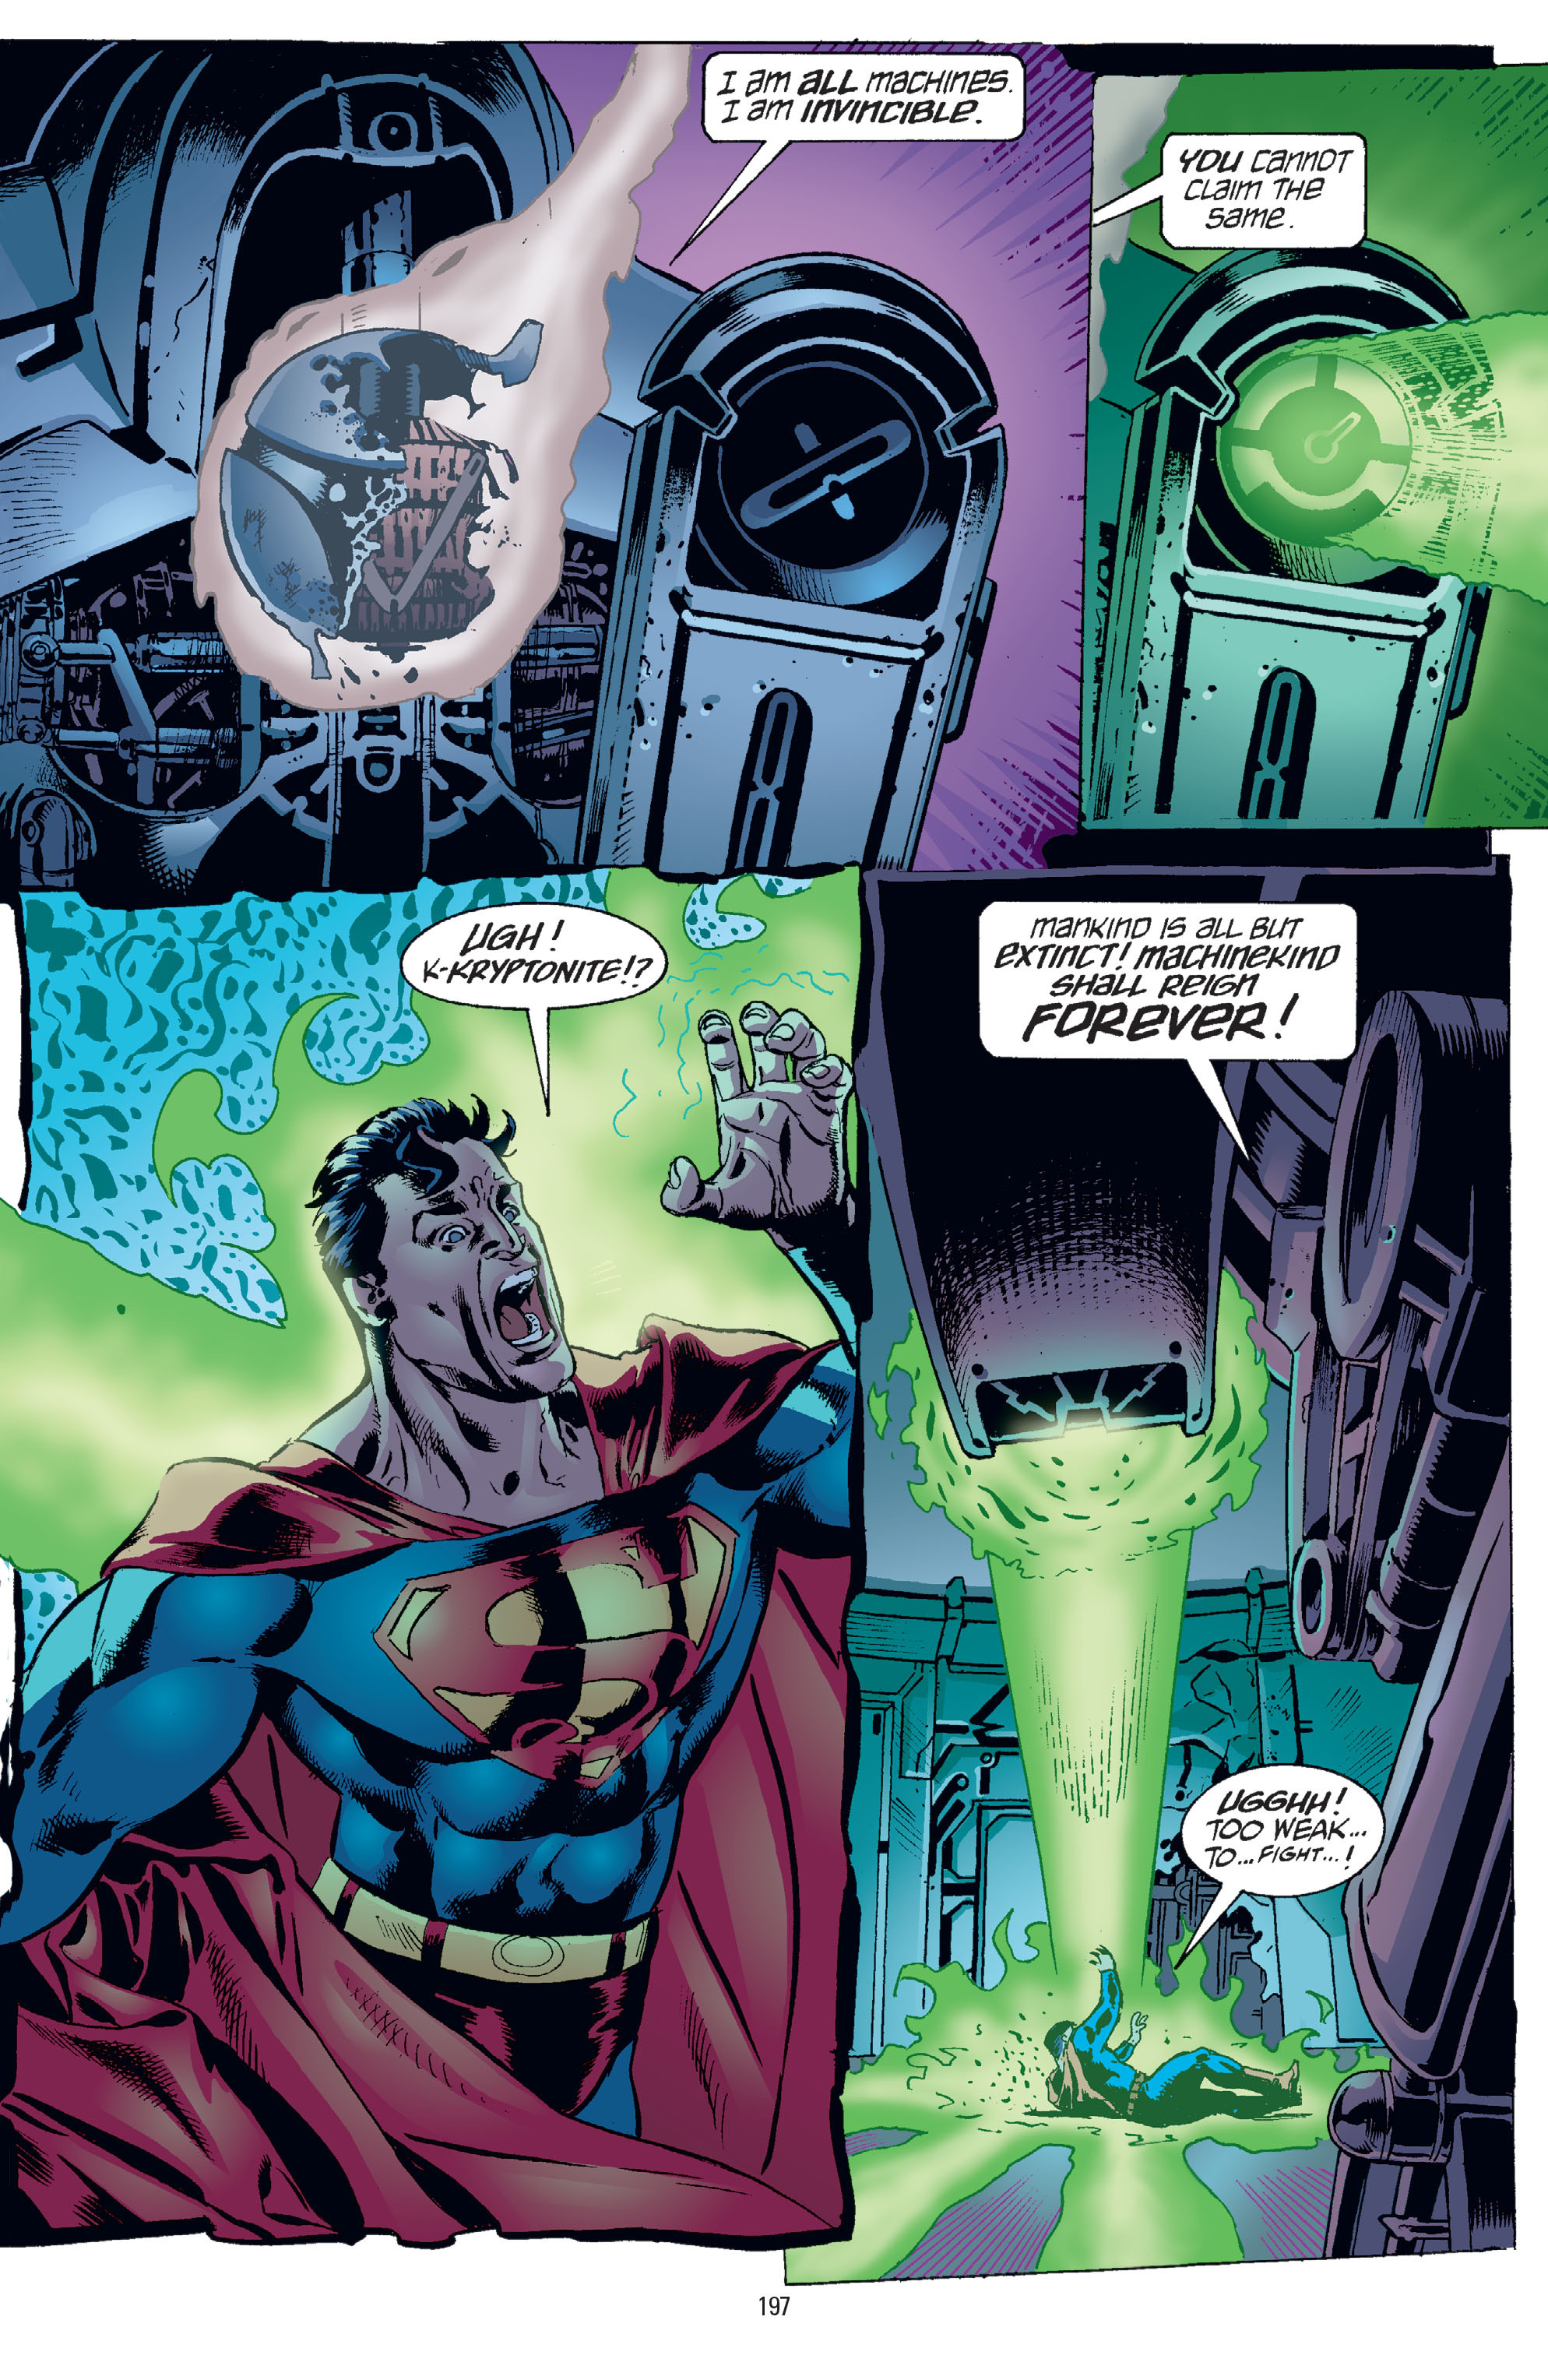 DC Comics/Dark Horse Comics: Justice League Full #1 - English 193